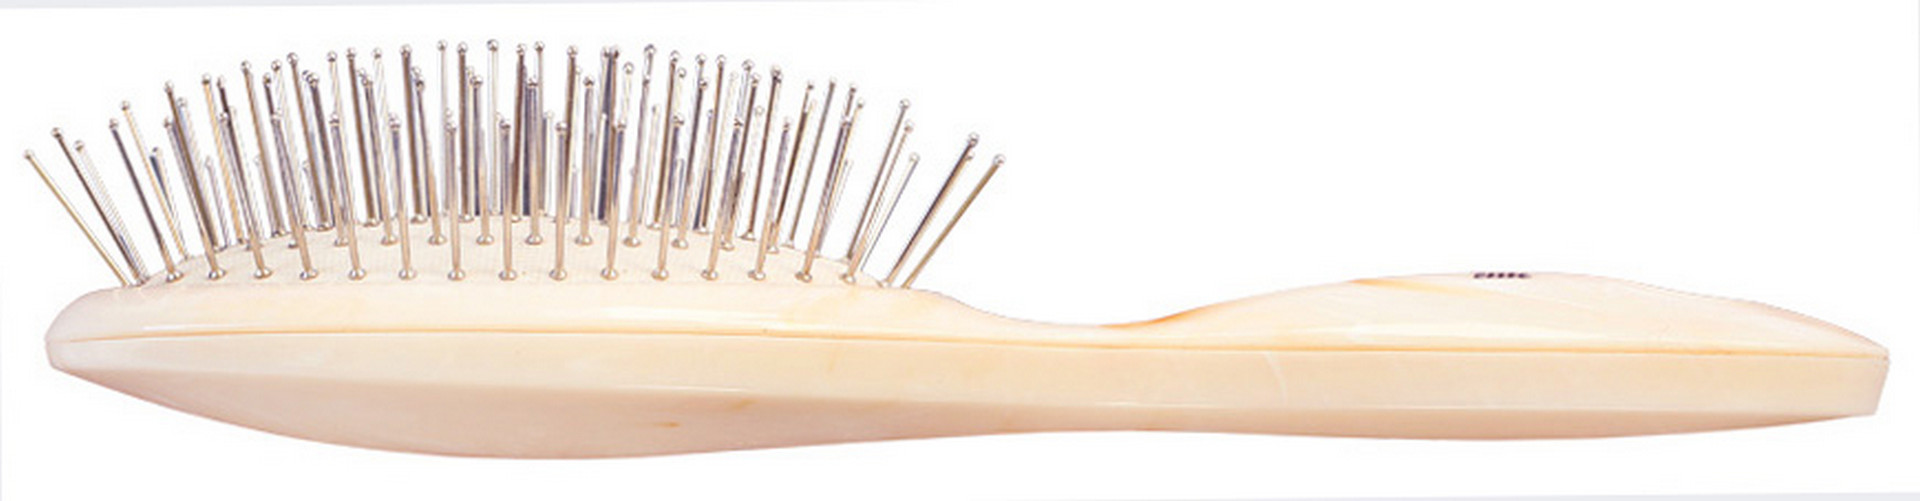 Щетка для волос CLARETTE на подушке с металлическими зубьями (компакт)